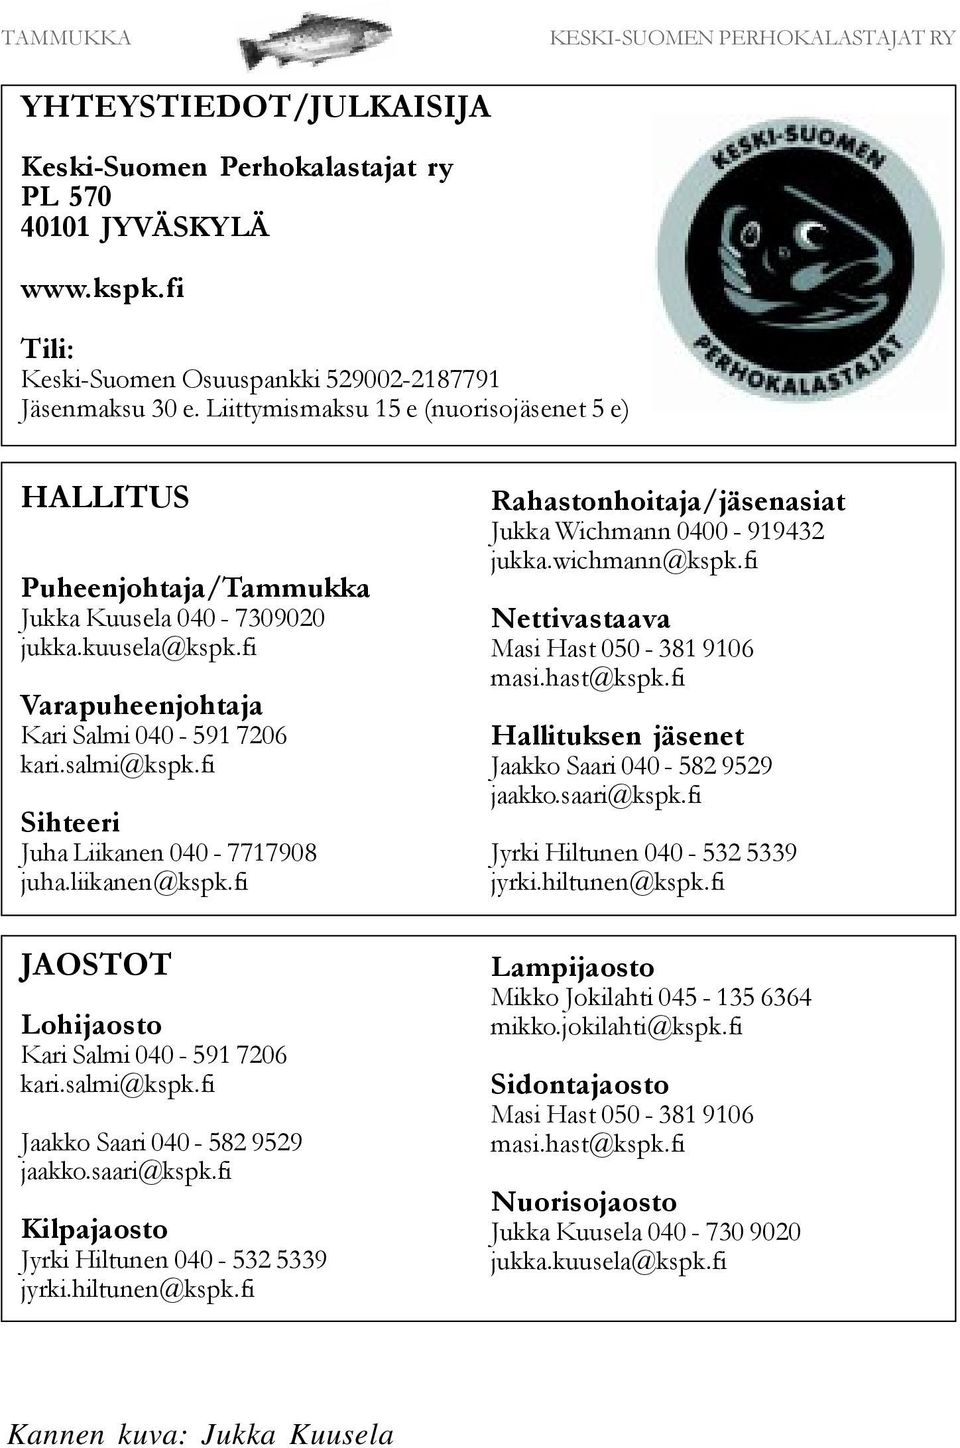 fi Sihteeri Juha Liikanen 040-7717908 juha.liikanen@kspk.fi JAOSTOT Lohijaosto Kari Salmi 040-591 7206 kari.salmi@kspk.fi Jaakko Saari 040-582 9529 jaakko.saari@kspk.